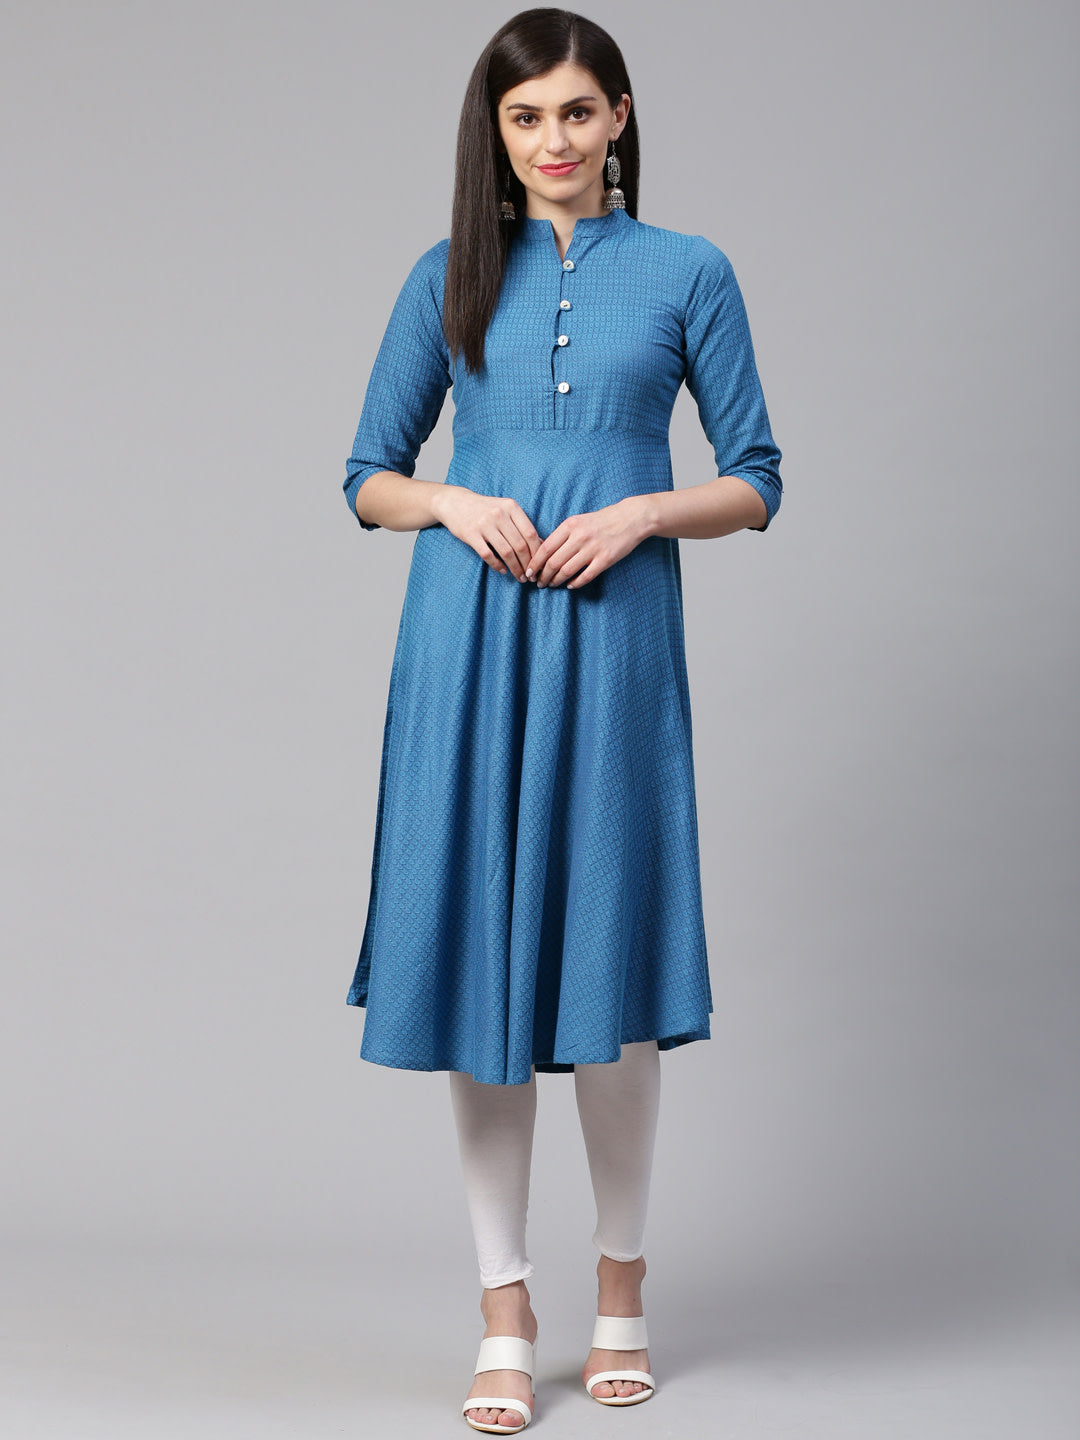 Jompers Women Blue Woven Design Jacquard Weave A-Line Kurta - Distacart